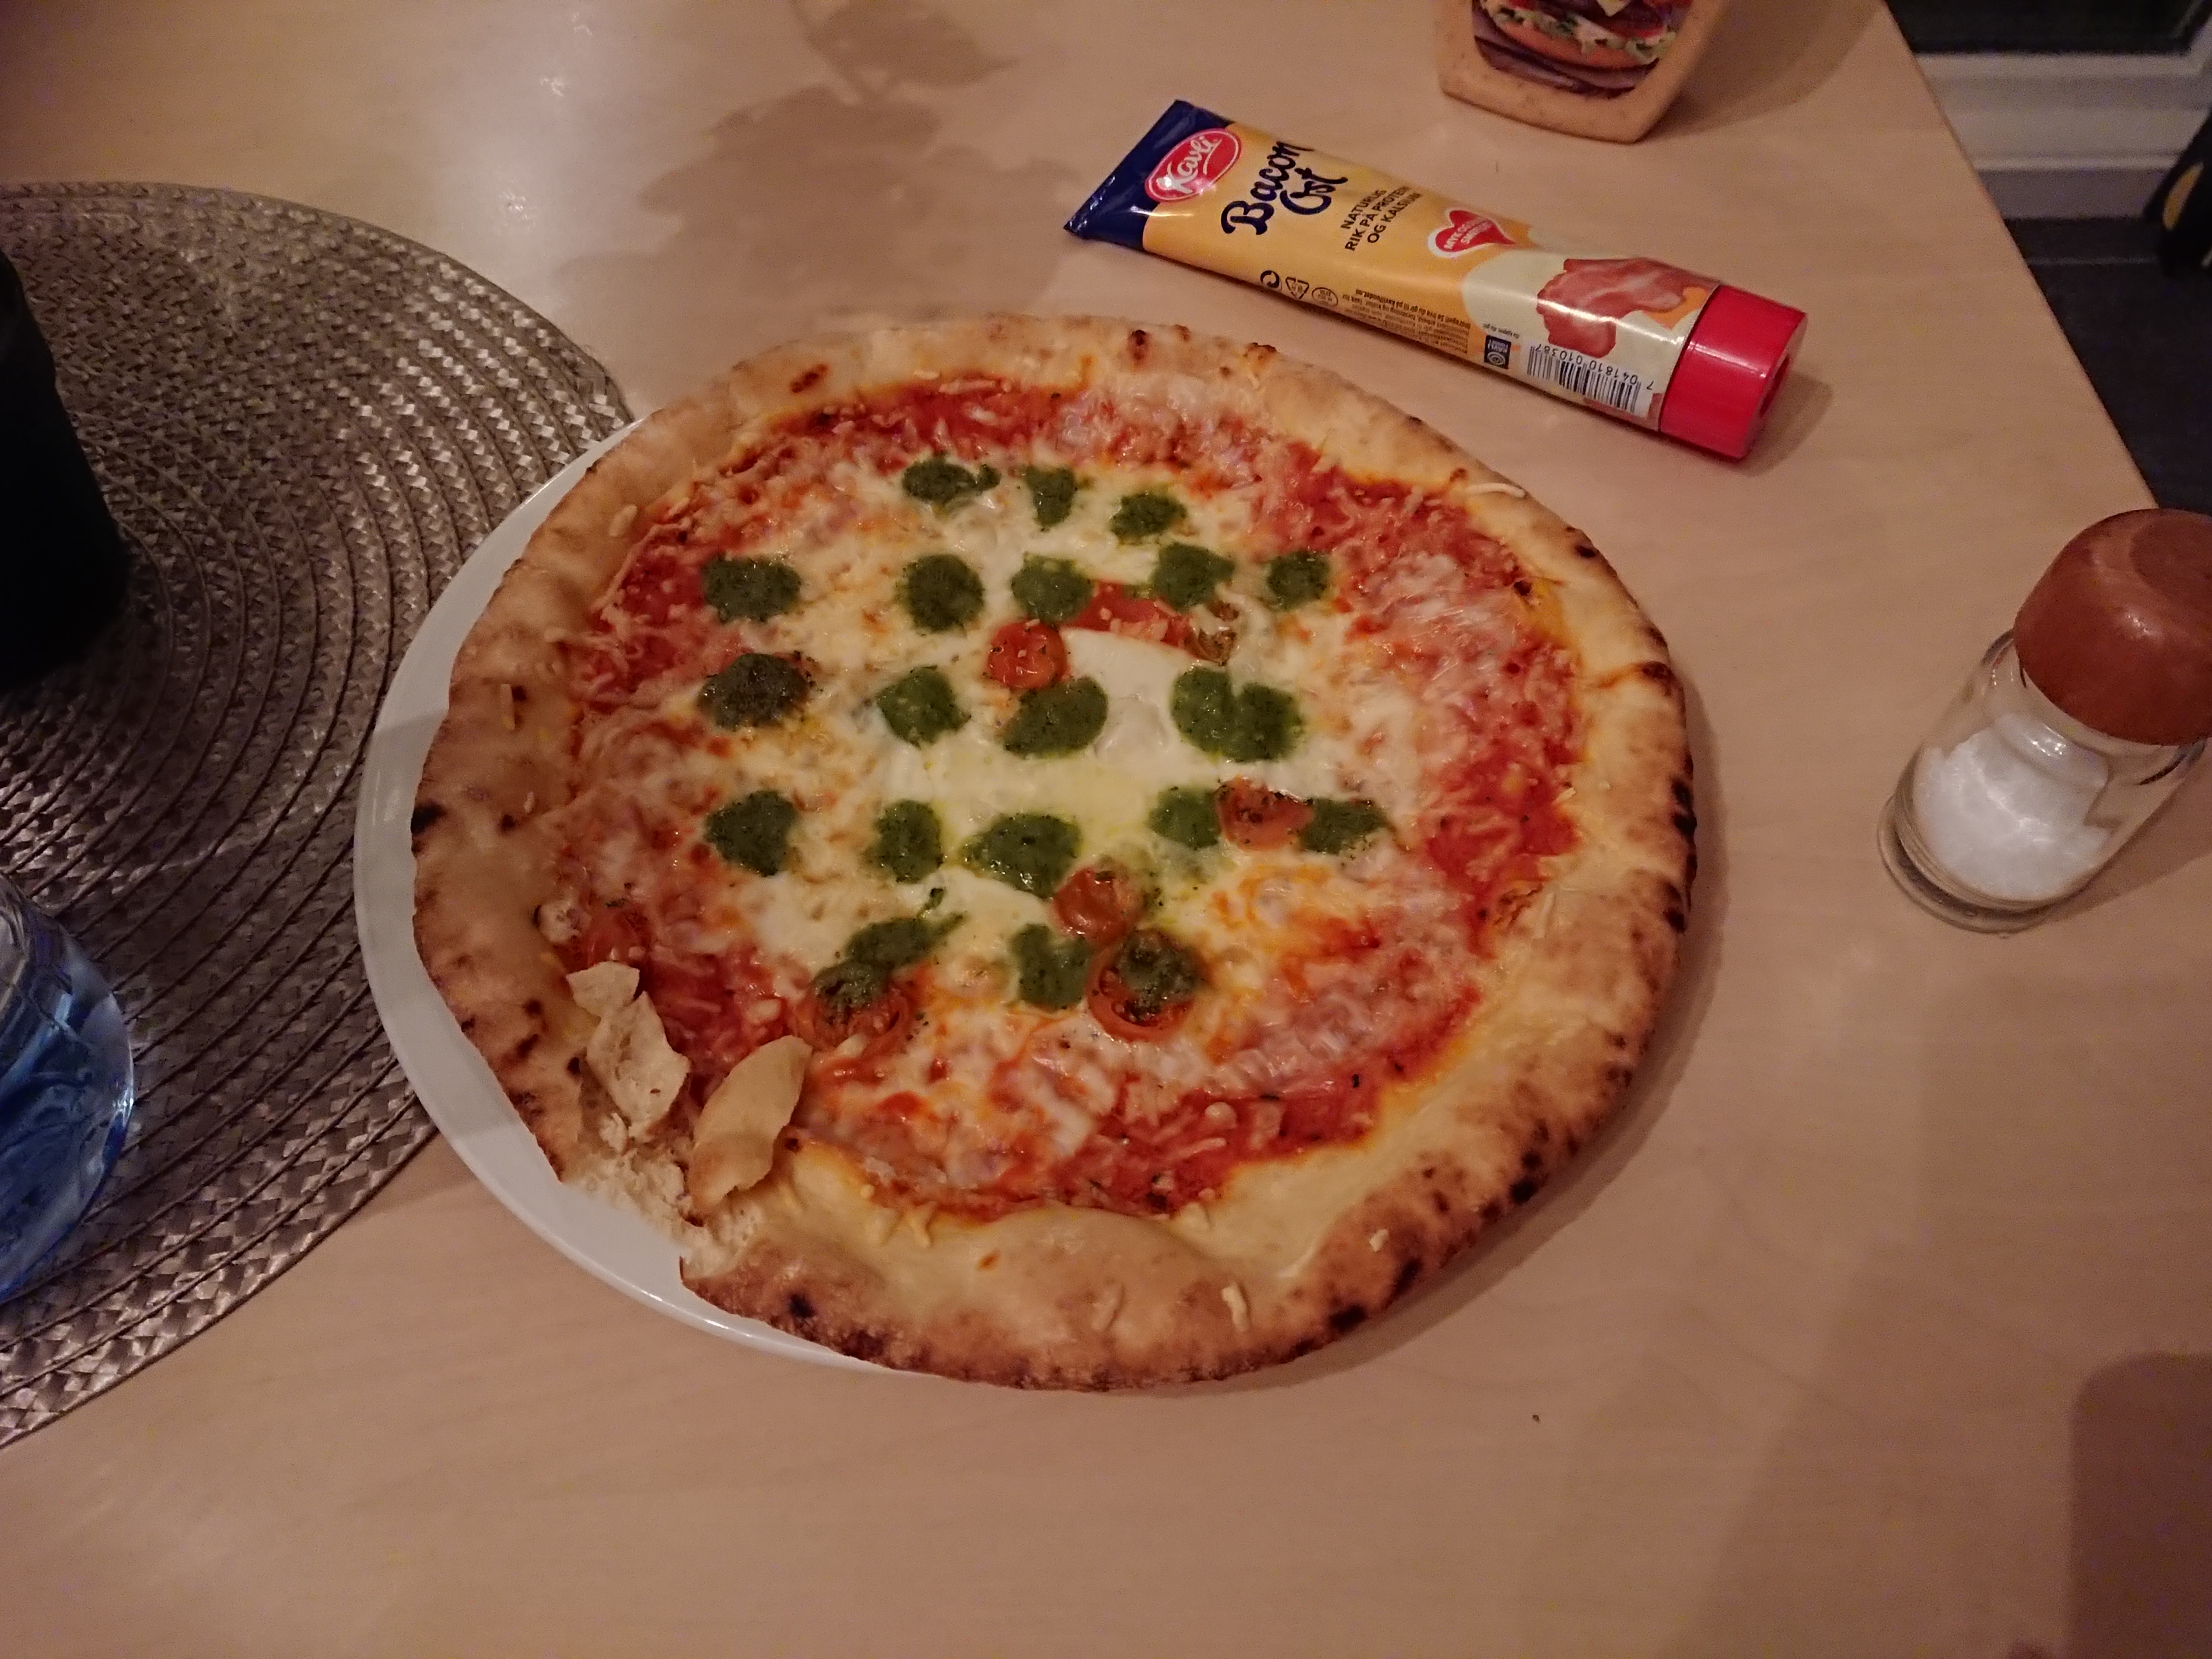 オーロラ鑑賞後に夜食で食べた冷凍ピザ、調理後